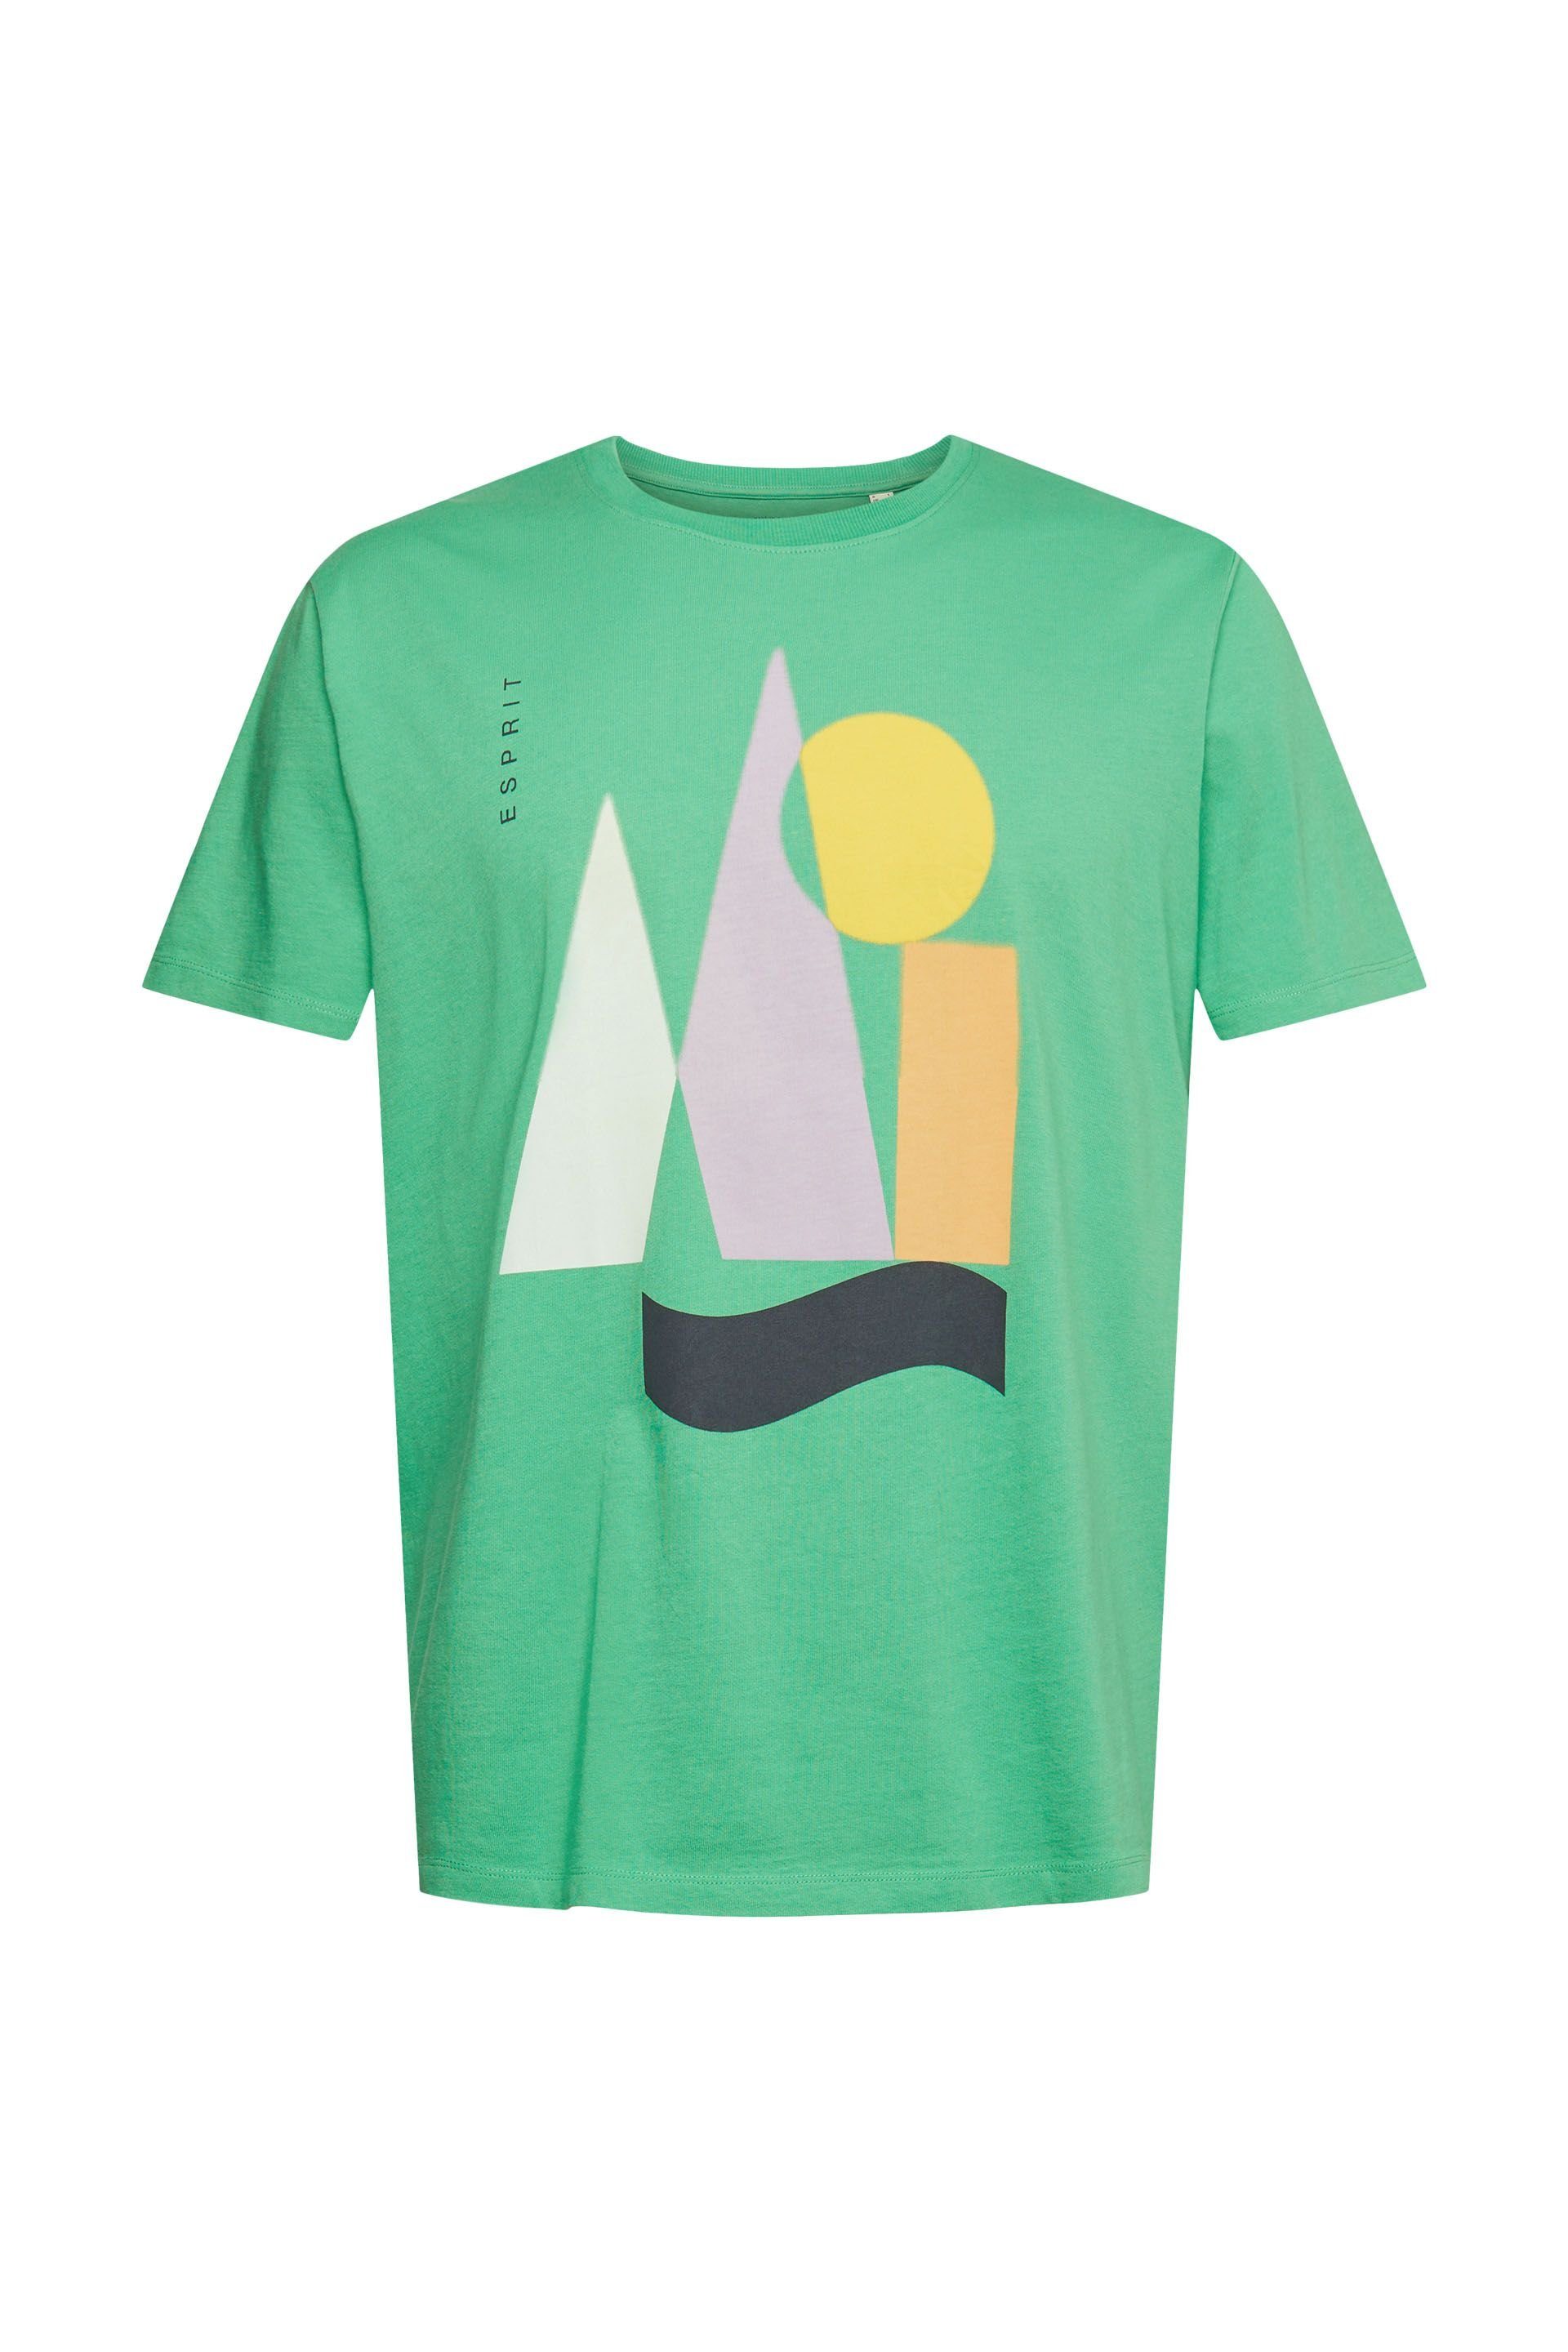 Esprit T-Shirt green